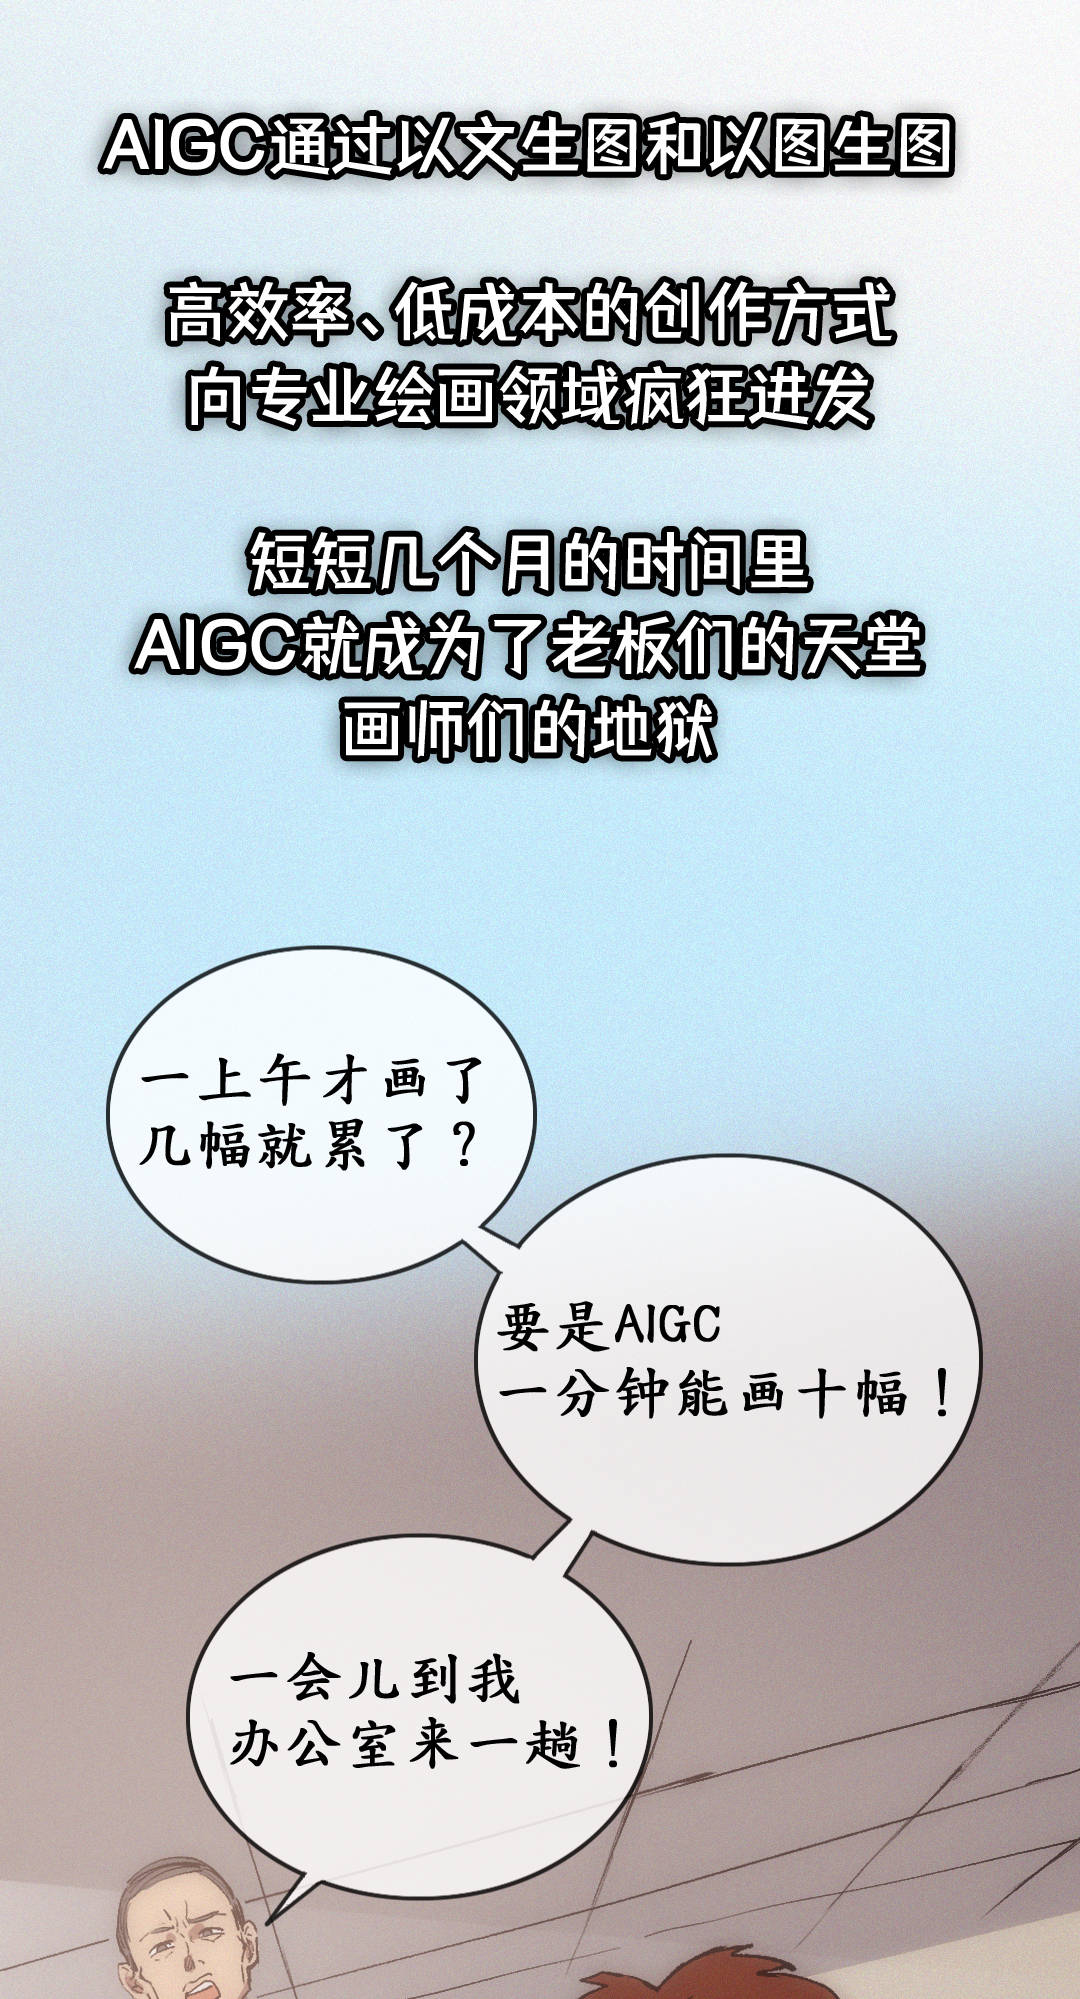 在AIGC魔法世界里，你是麻瓜吗？